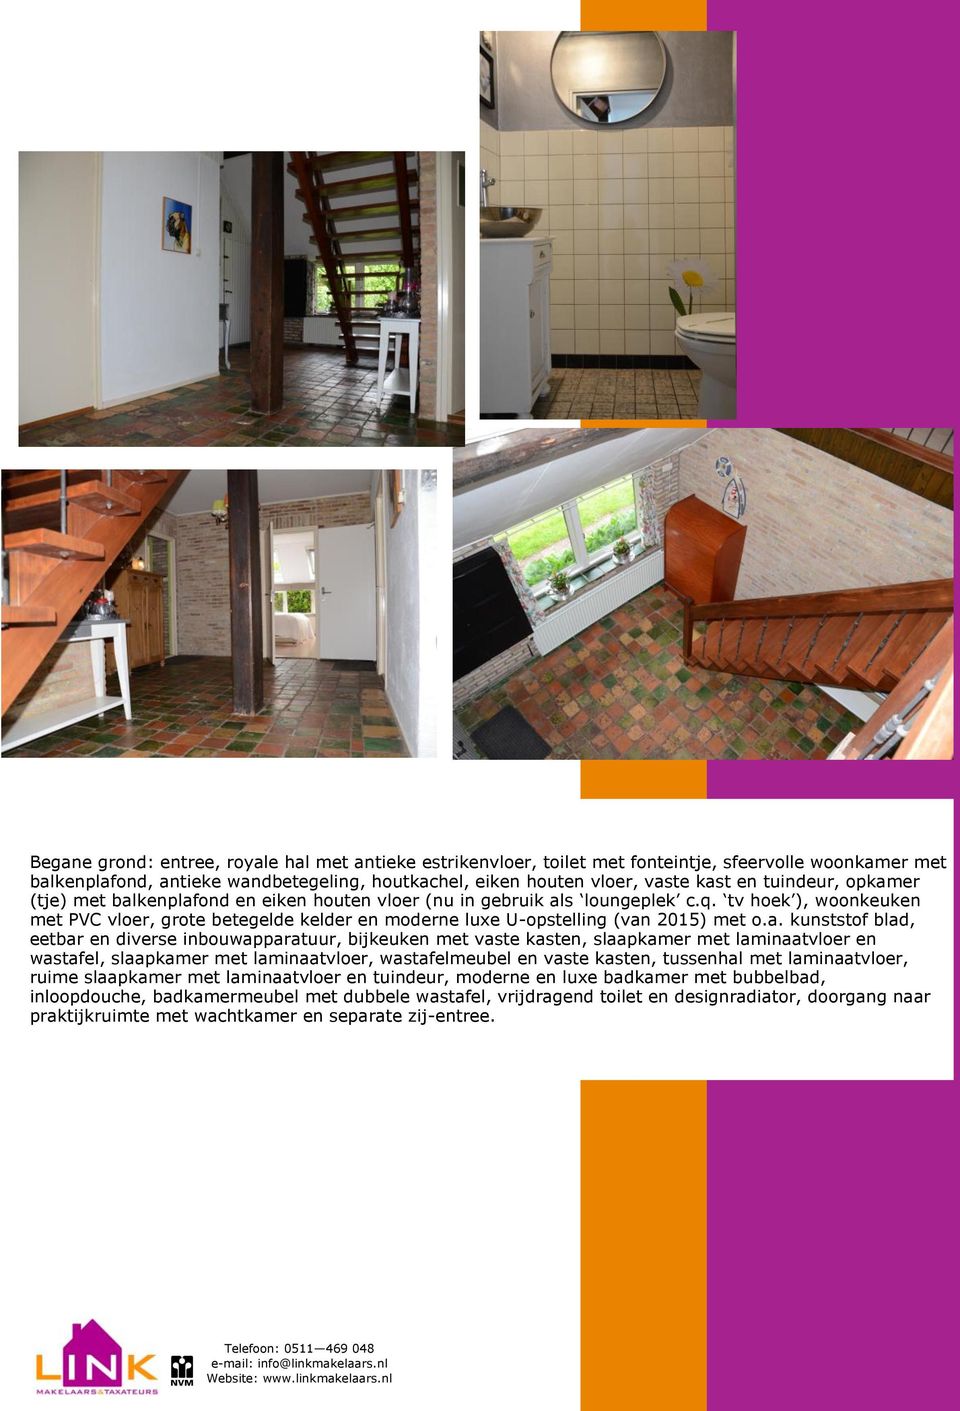 tv hoek ), woonkeuken met PVC vloer, grote betegelde kelder en moderne luxe U-opstelling (van